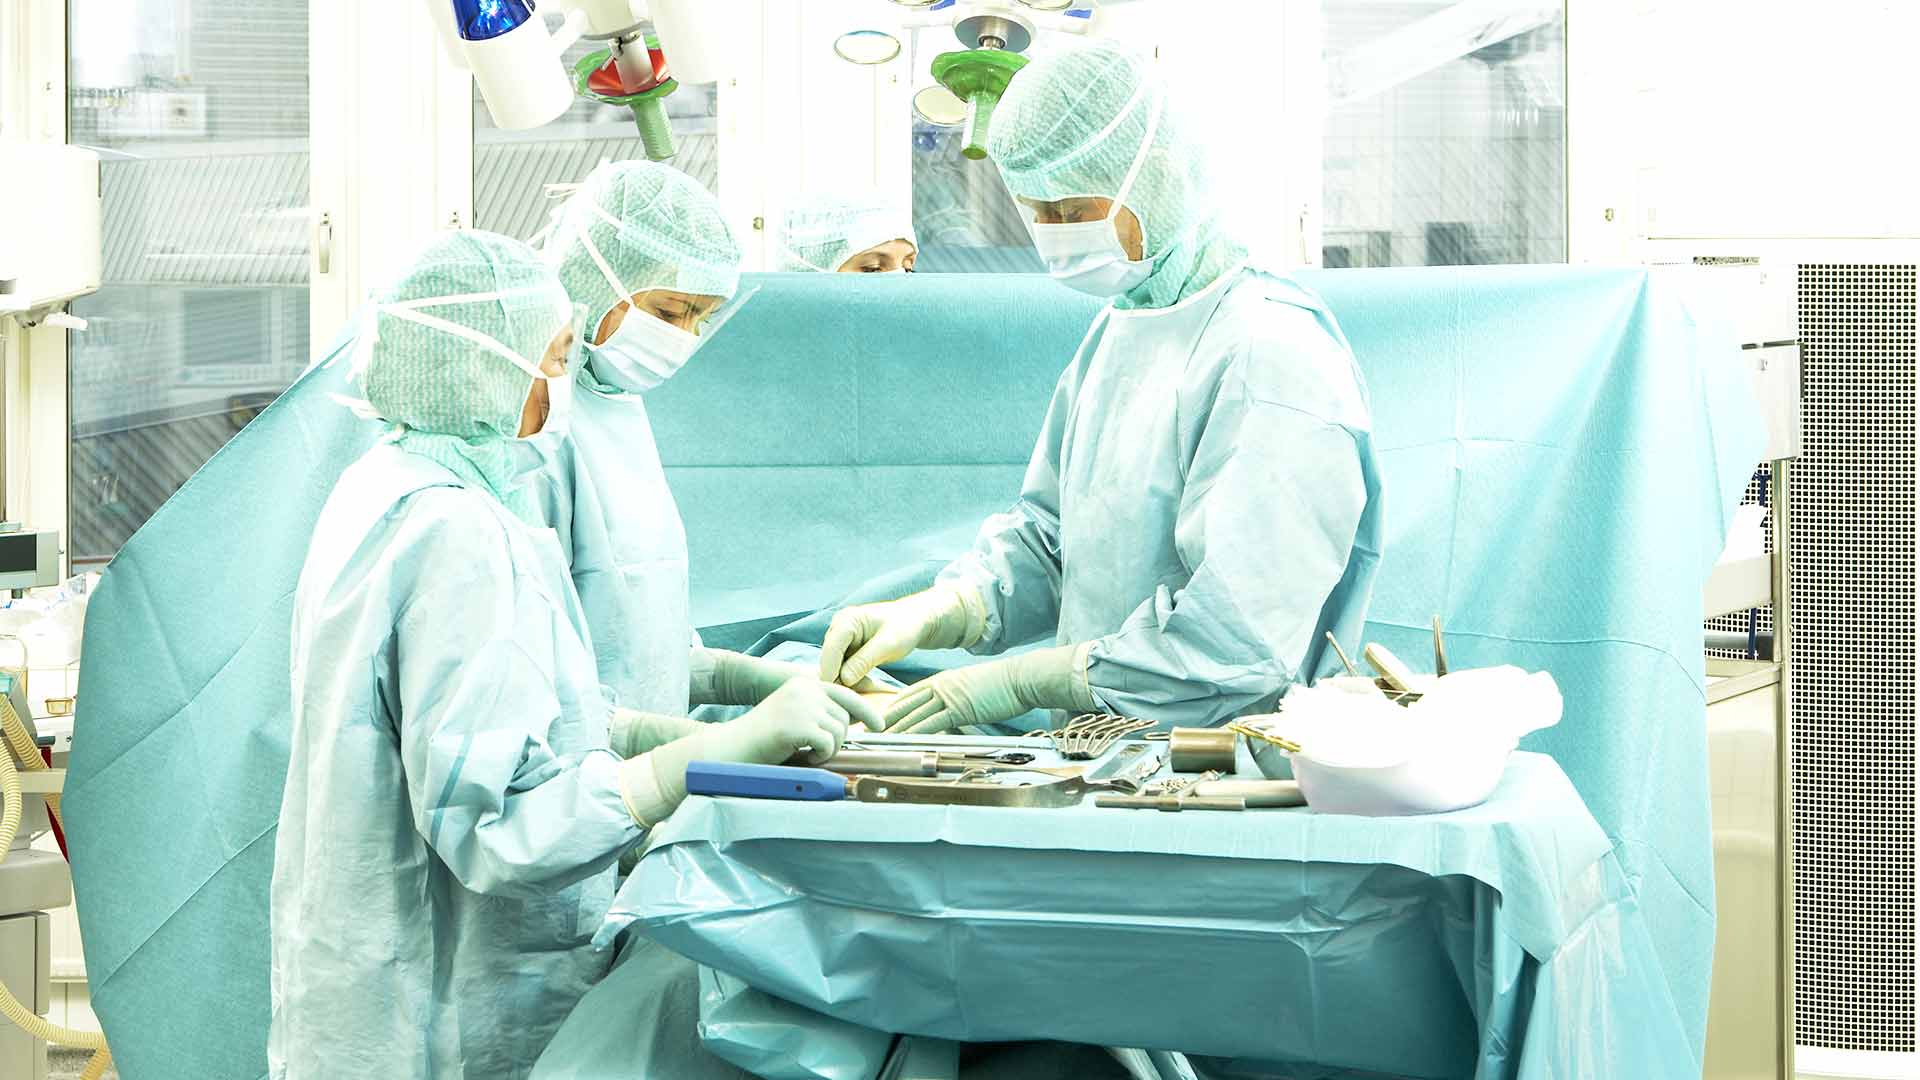 læger på operationsstue gør kirurgiske instrumenter klar